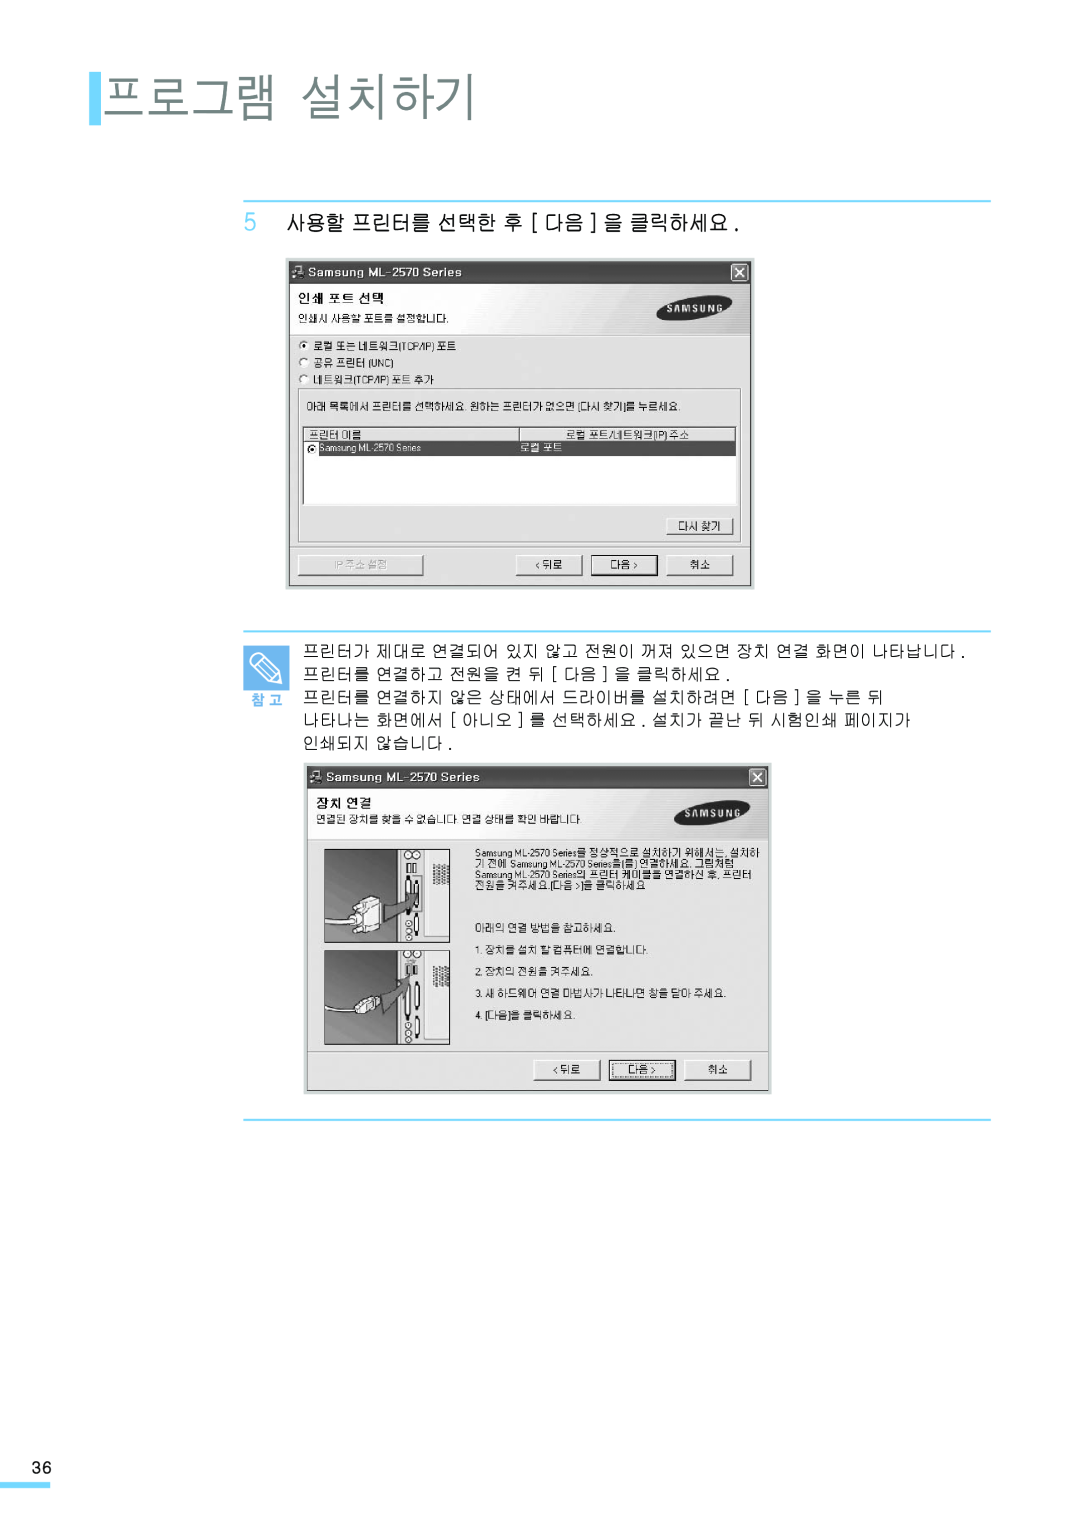 Samsung ML-2571N manual 프로그램 설치하기, 5 사용할 프린터를 선택한 후 다음 을 클릭하세요 